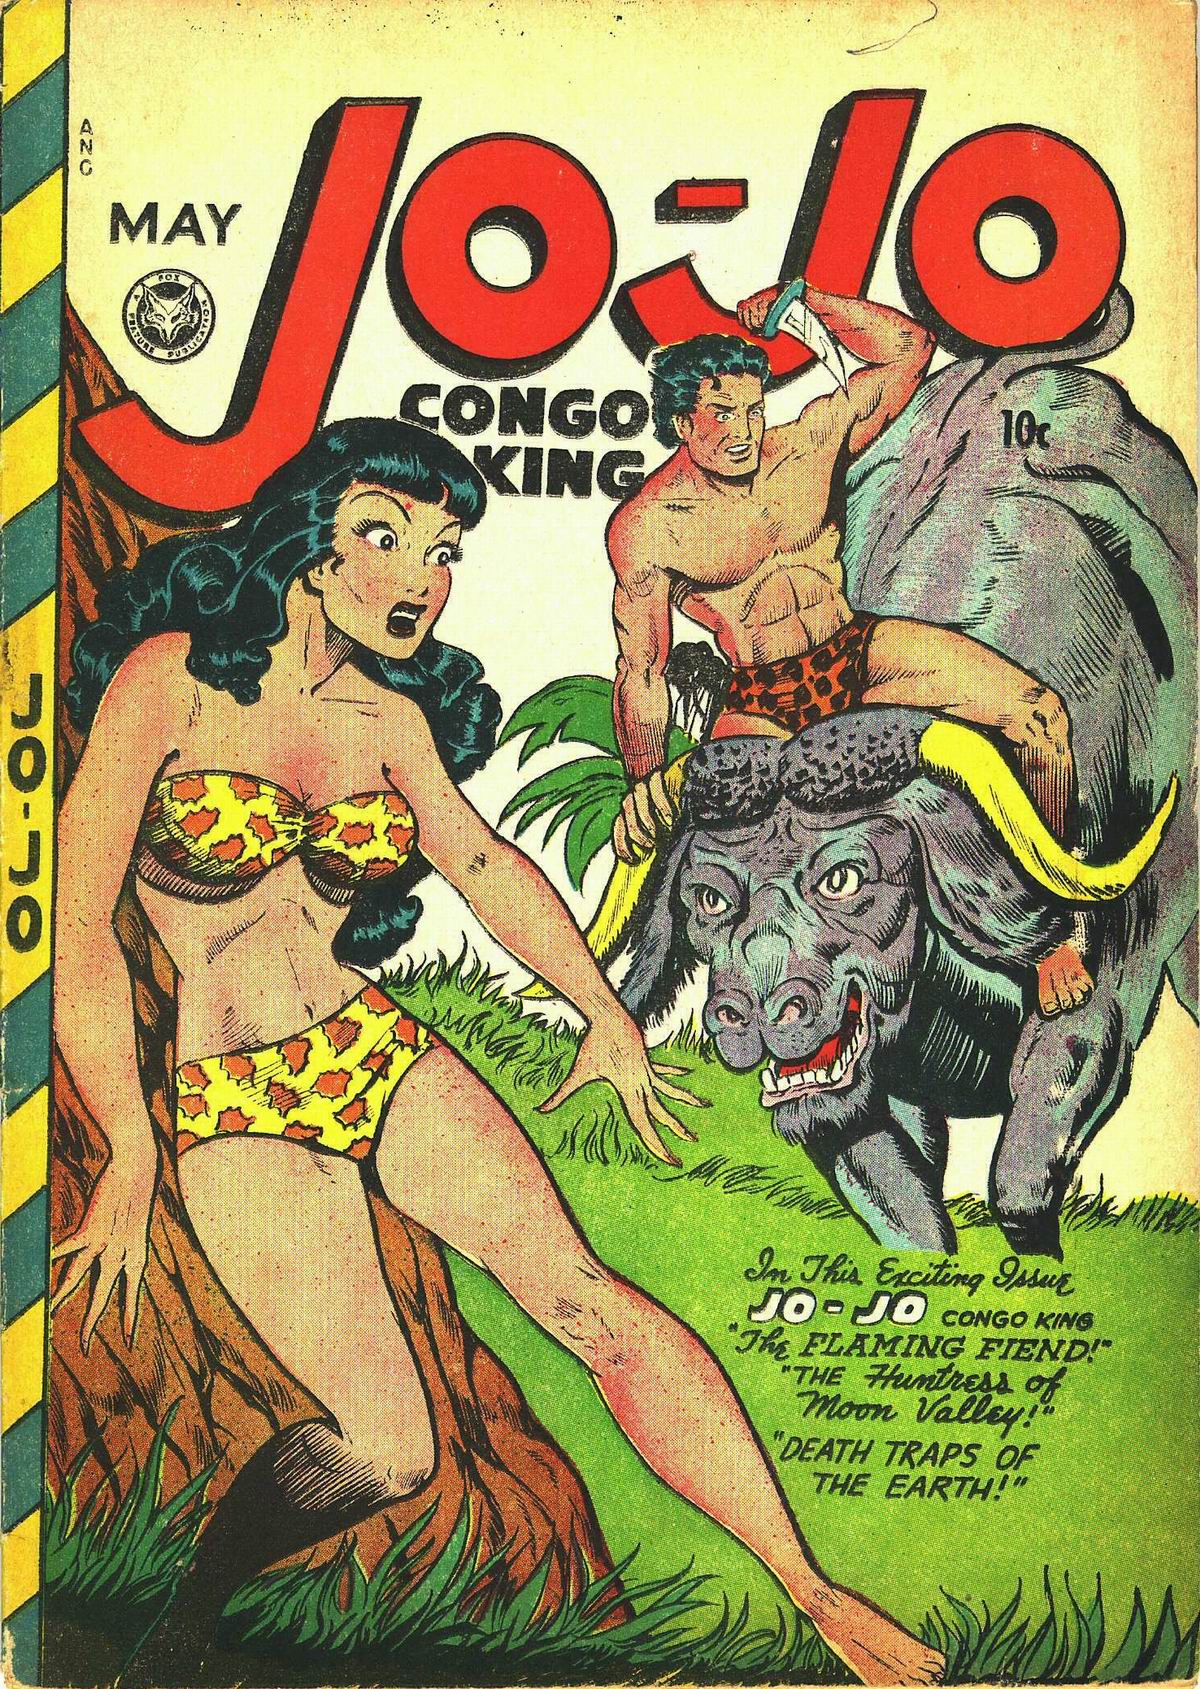 Read online Jo-Jo Congo King comic -  Issue #15 - 1